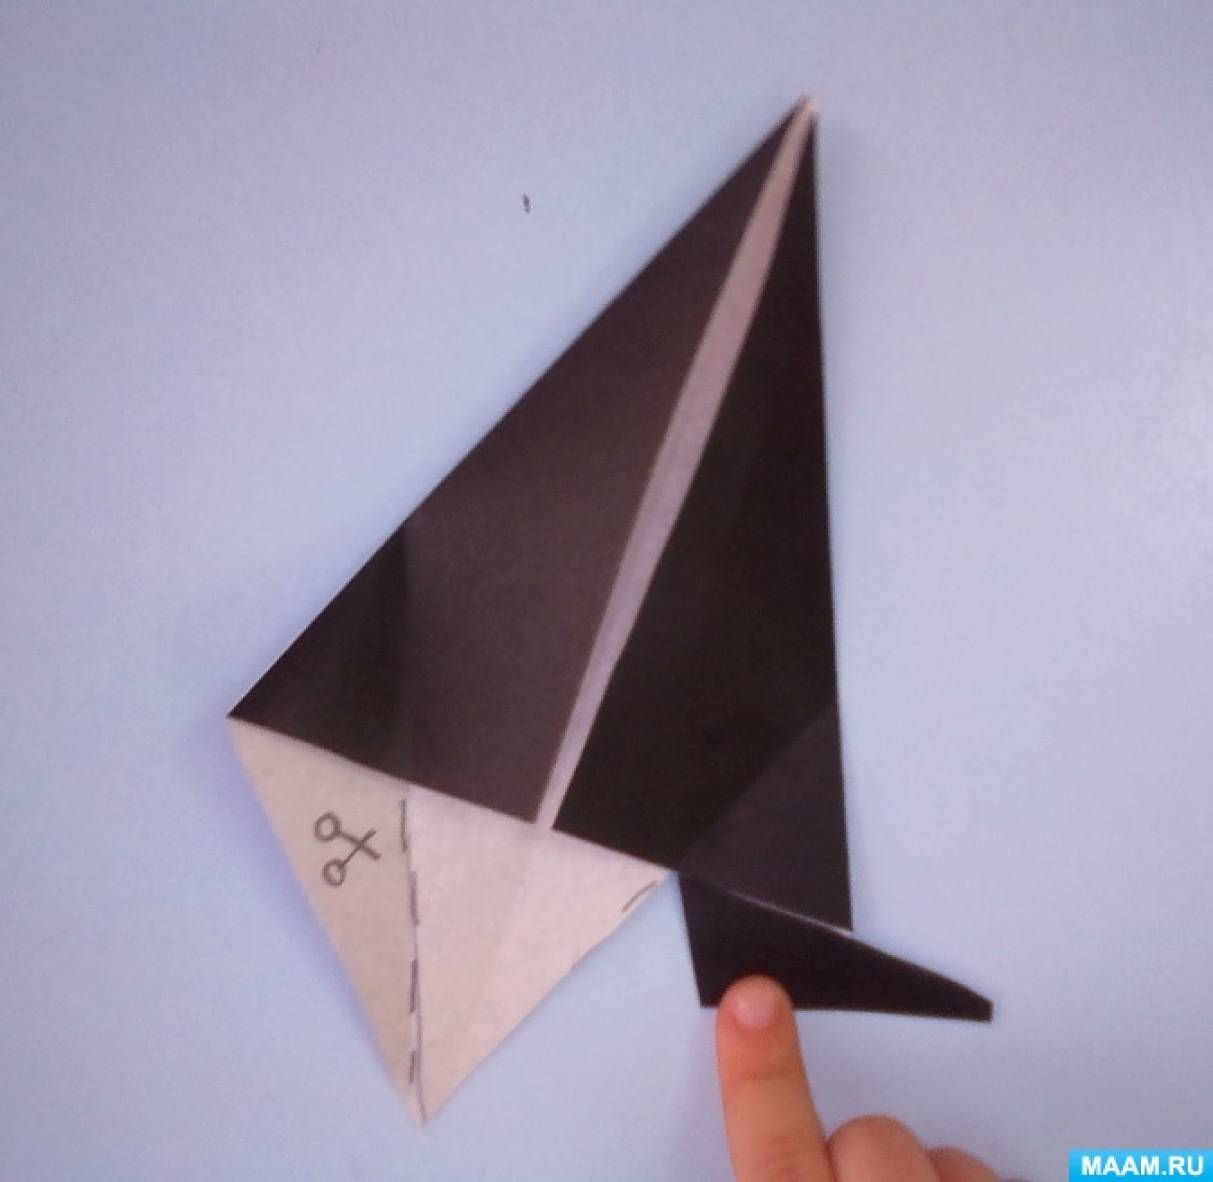 Кратковременная образовательная практика «Создание змеи из бумаги в технике оригами»